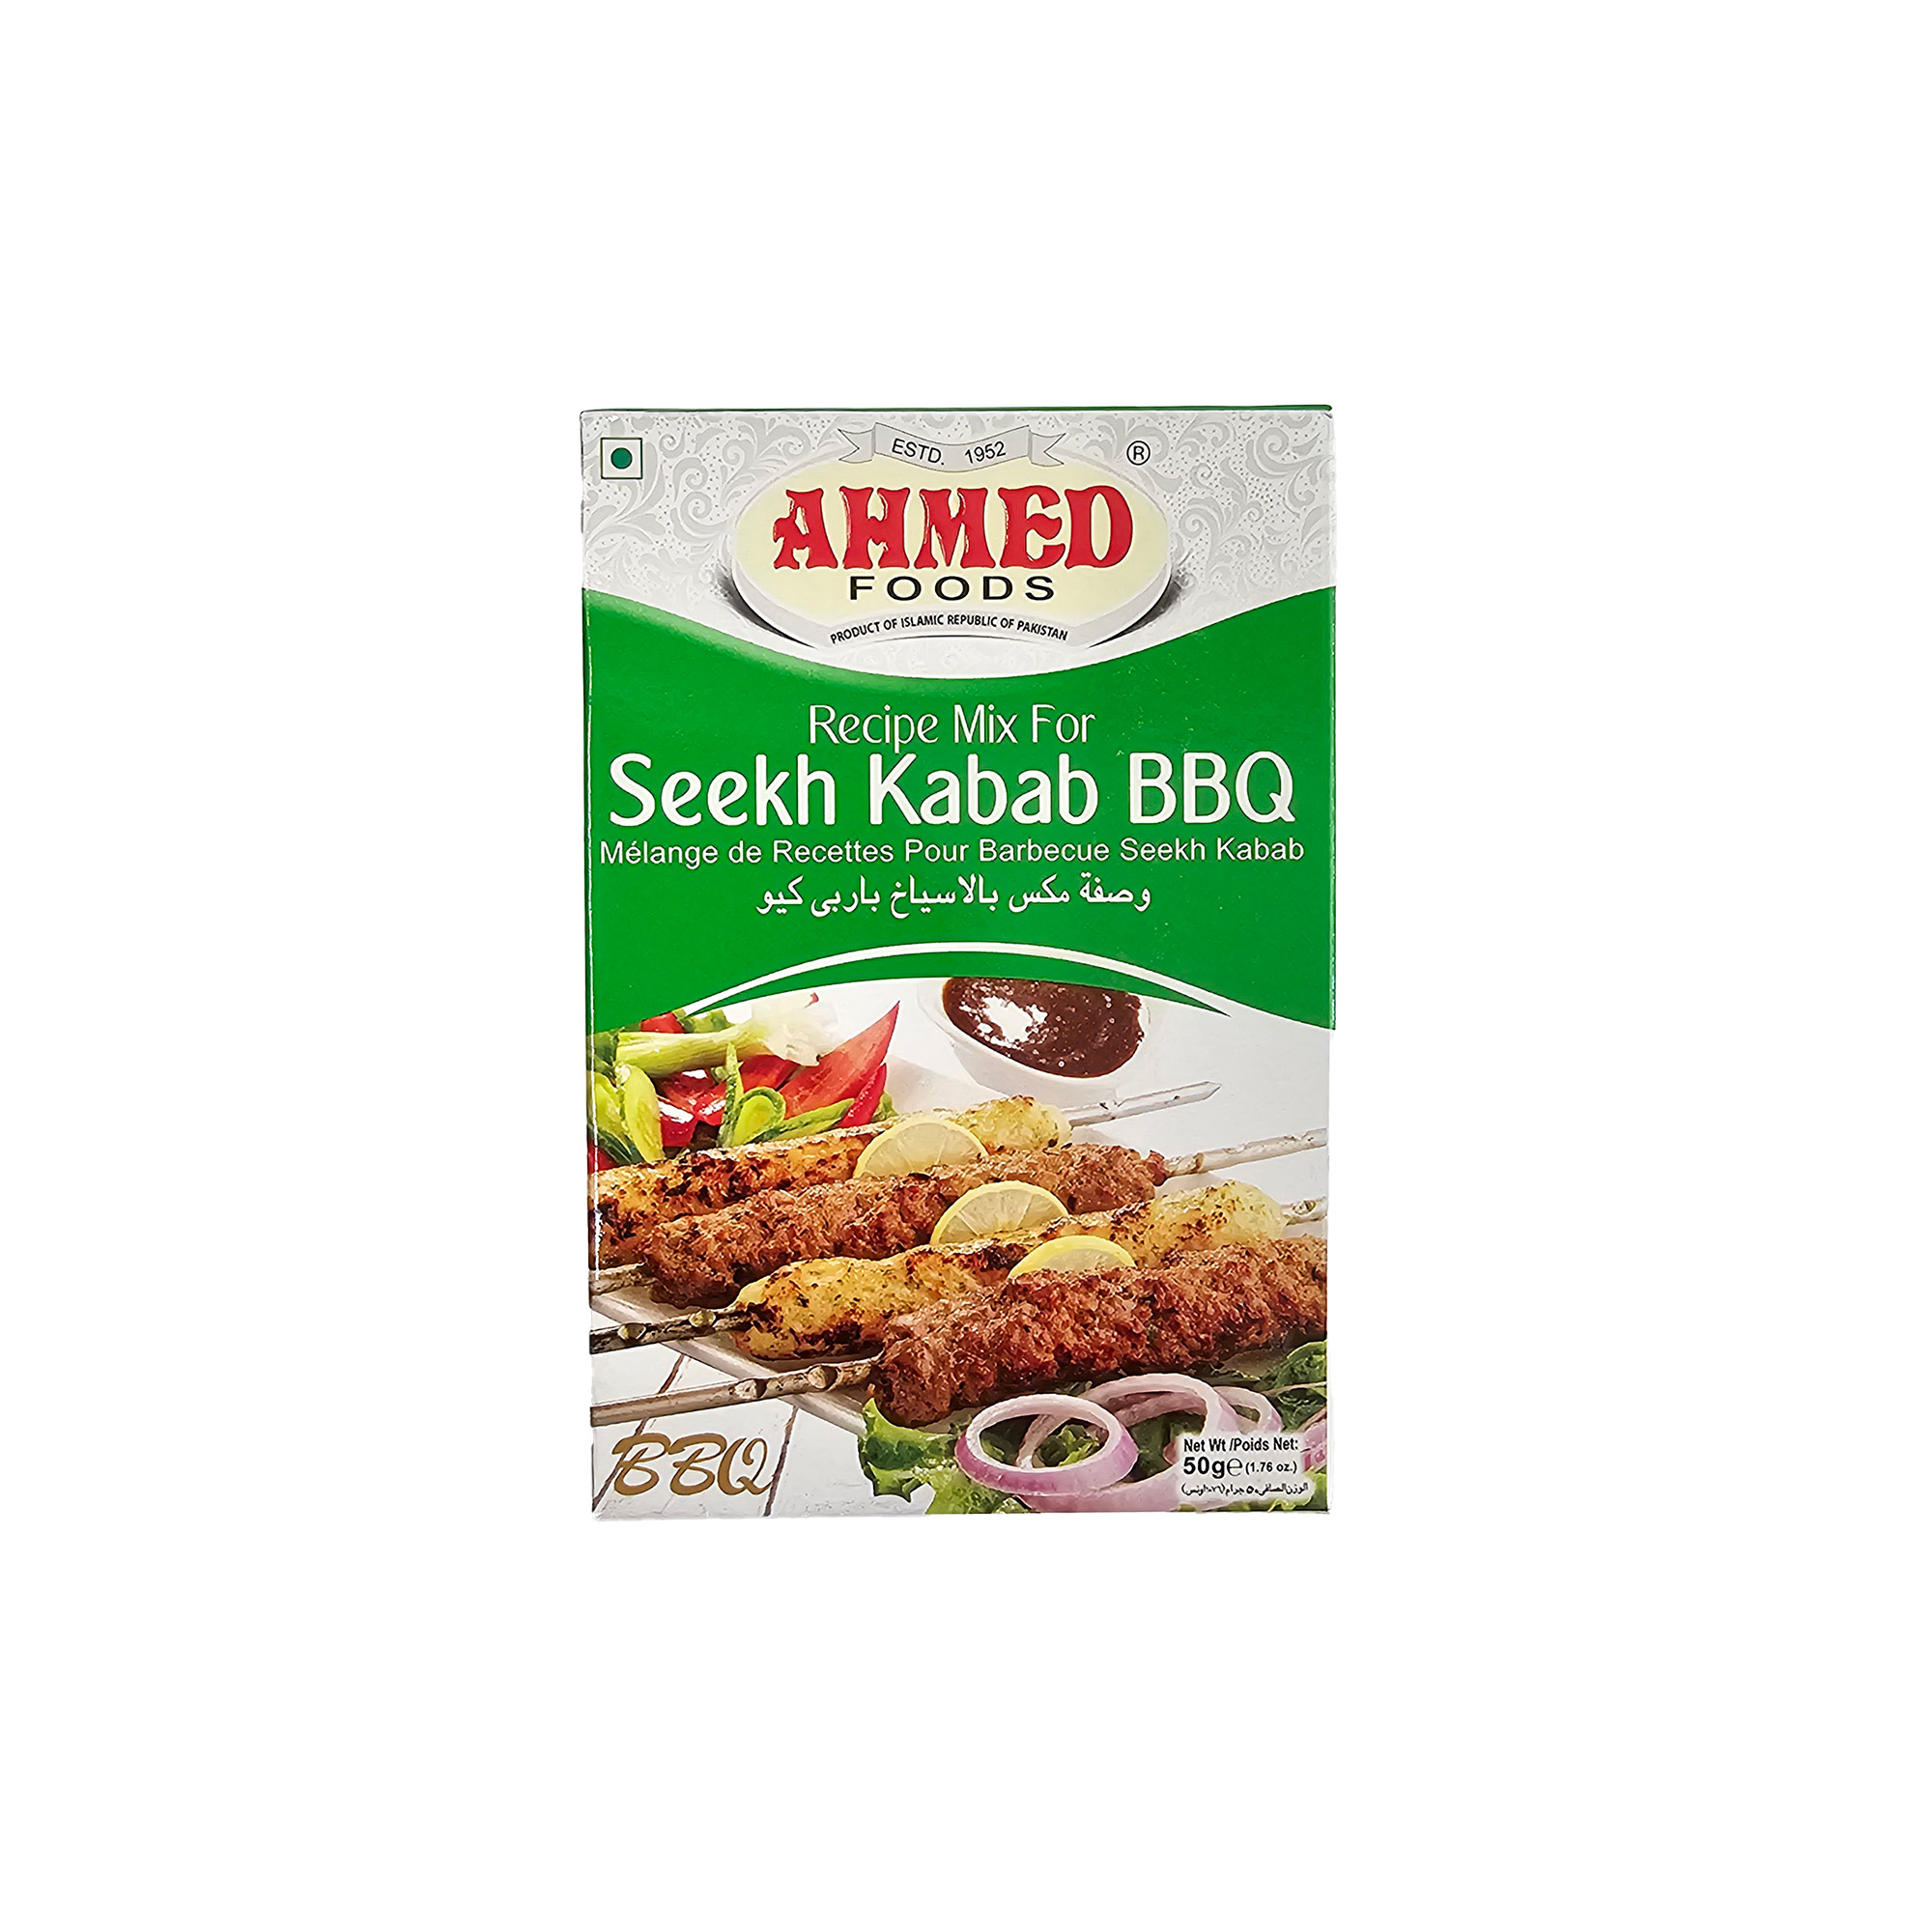 Seekh Kabab BBQ [AHMED FOODS]